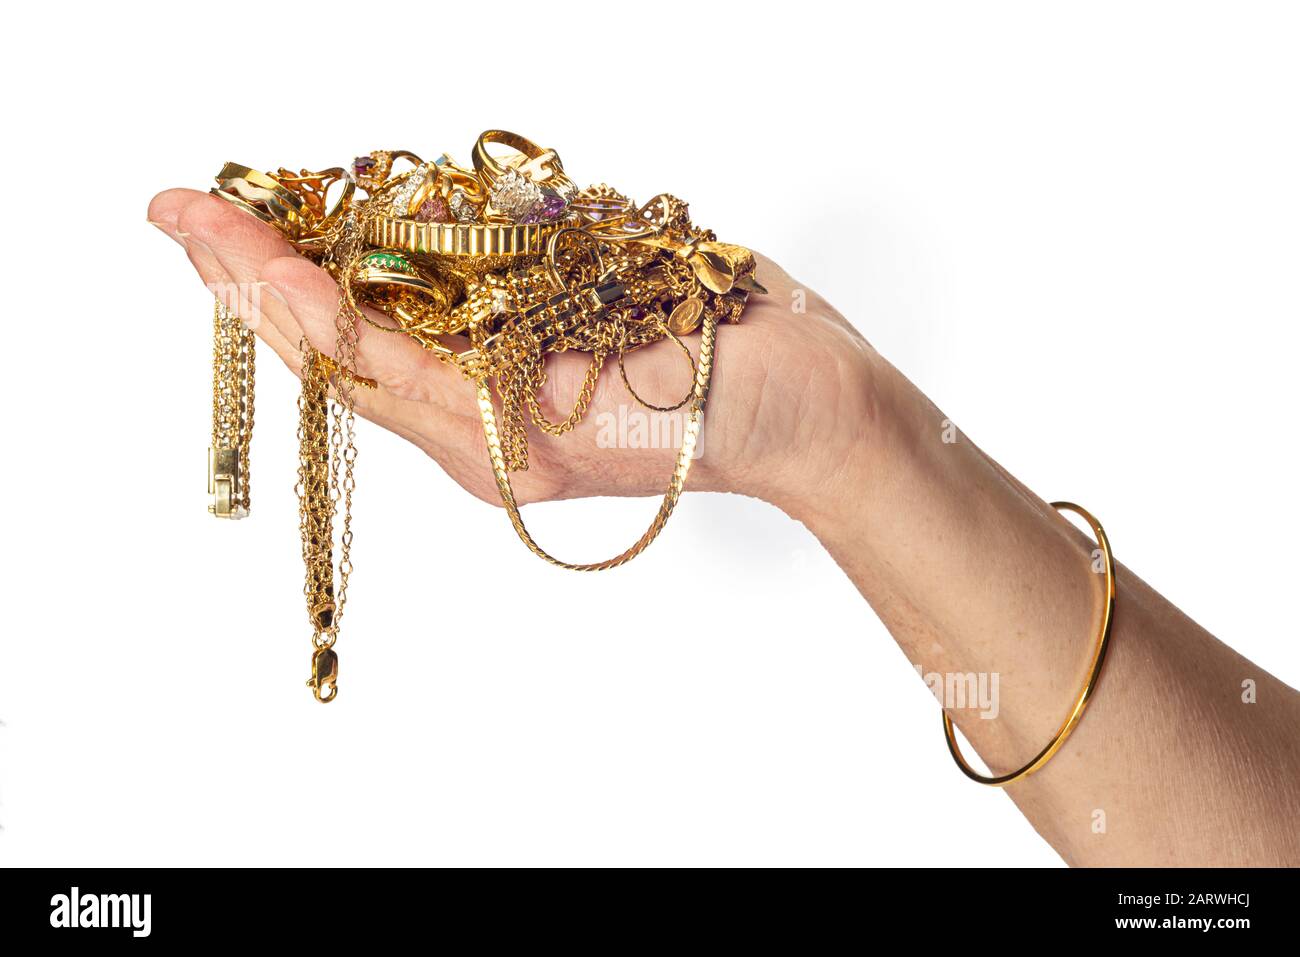 Colpo orizzontale della mano e del braccio di una donna che tiene un mucchio di gioielli in costume d’oro e indossa un braccialetto. Sfondo bianco con spazio di copia. Foto Stock